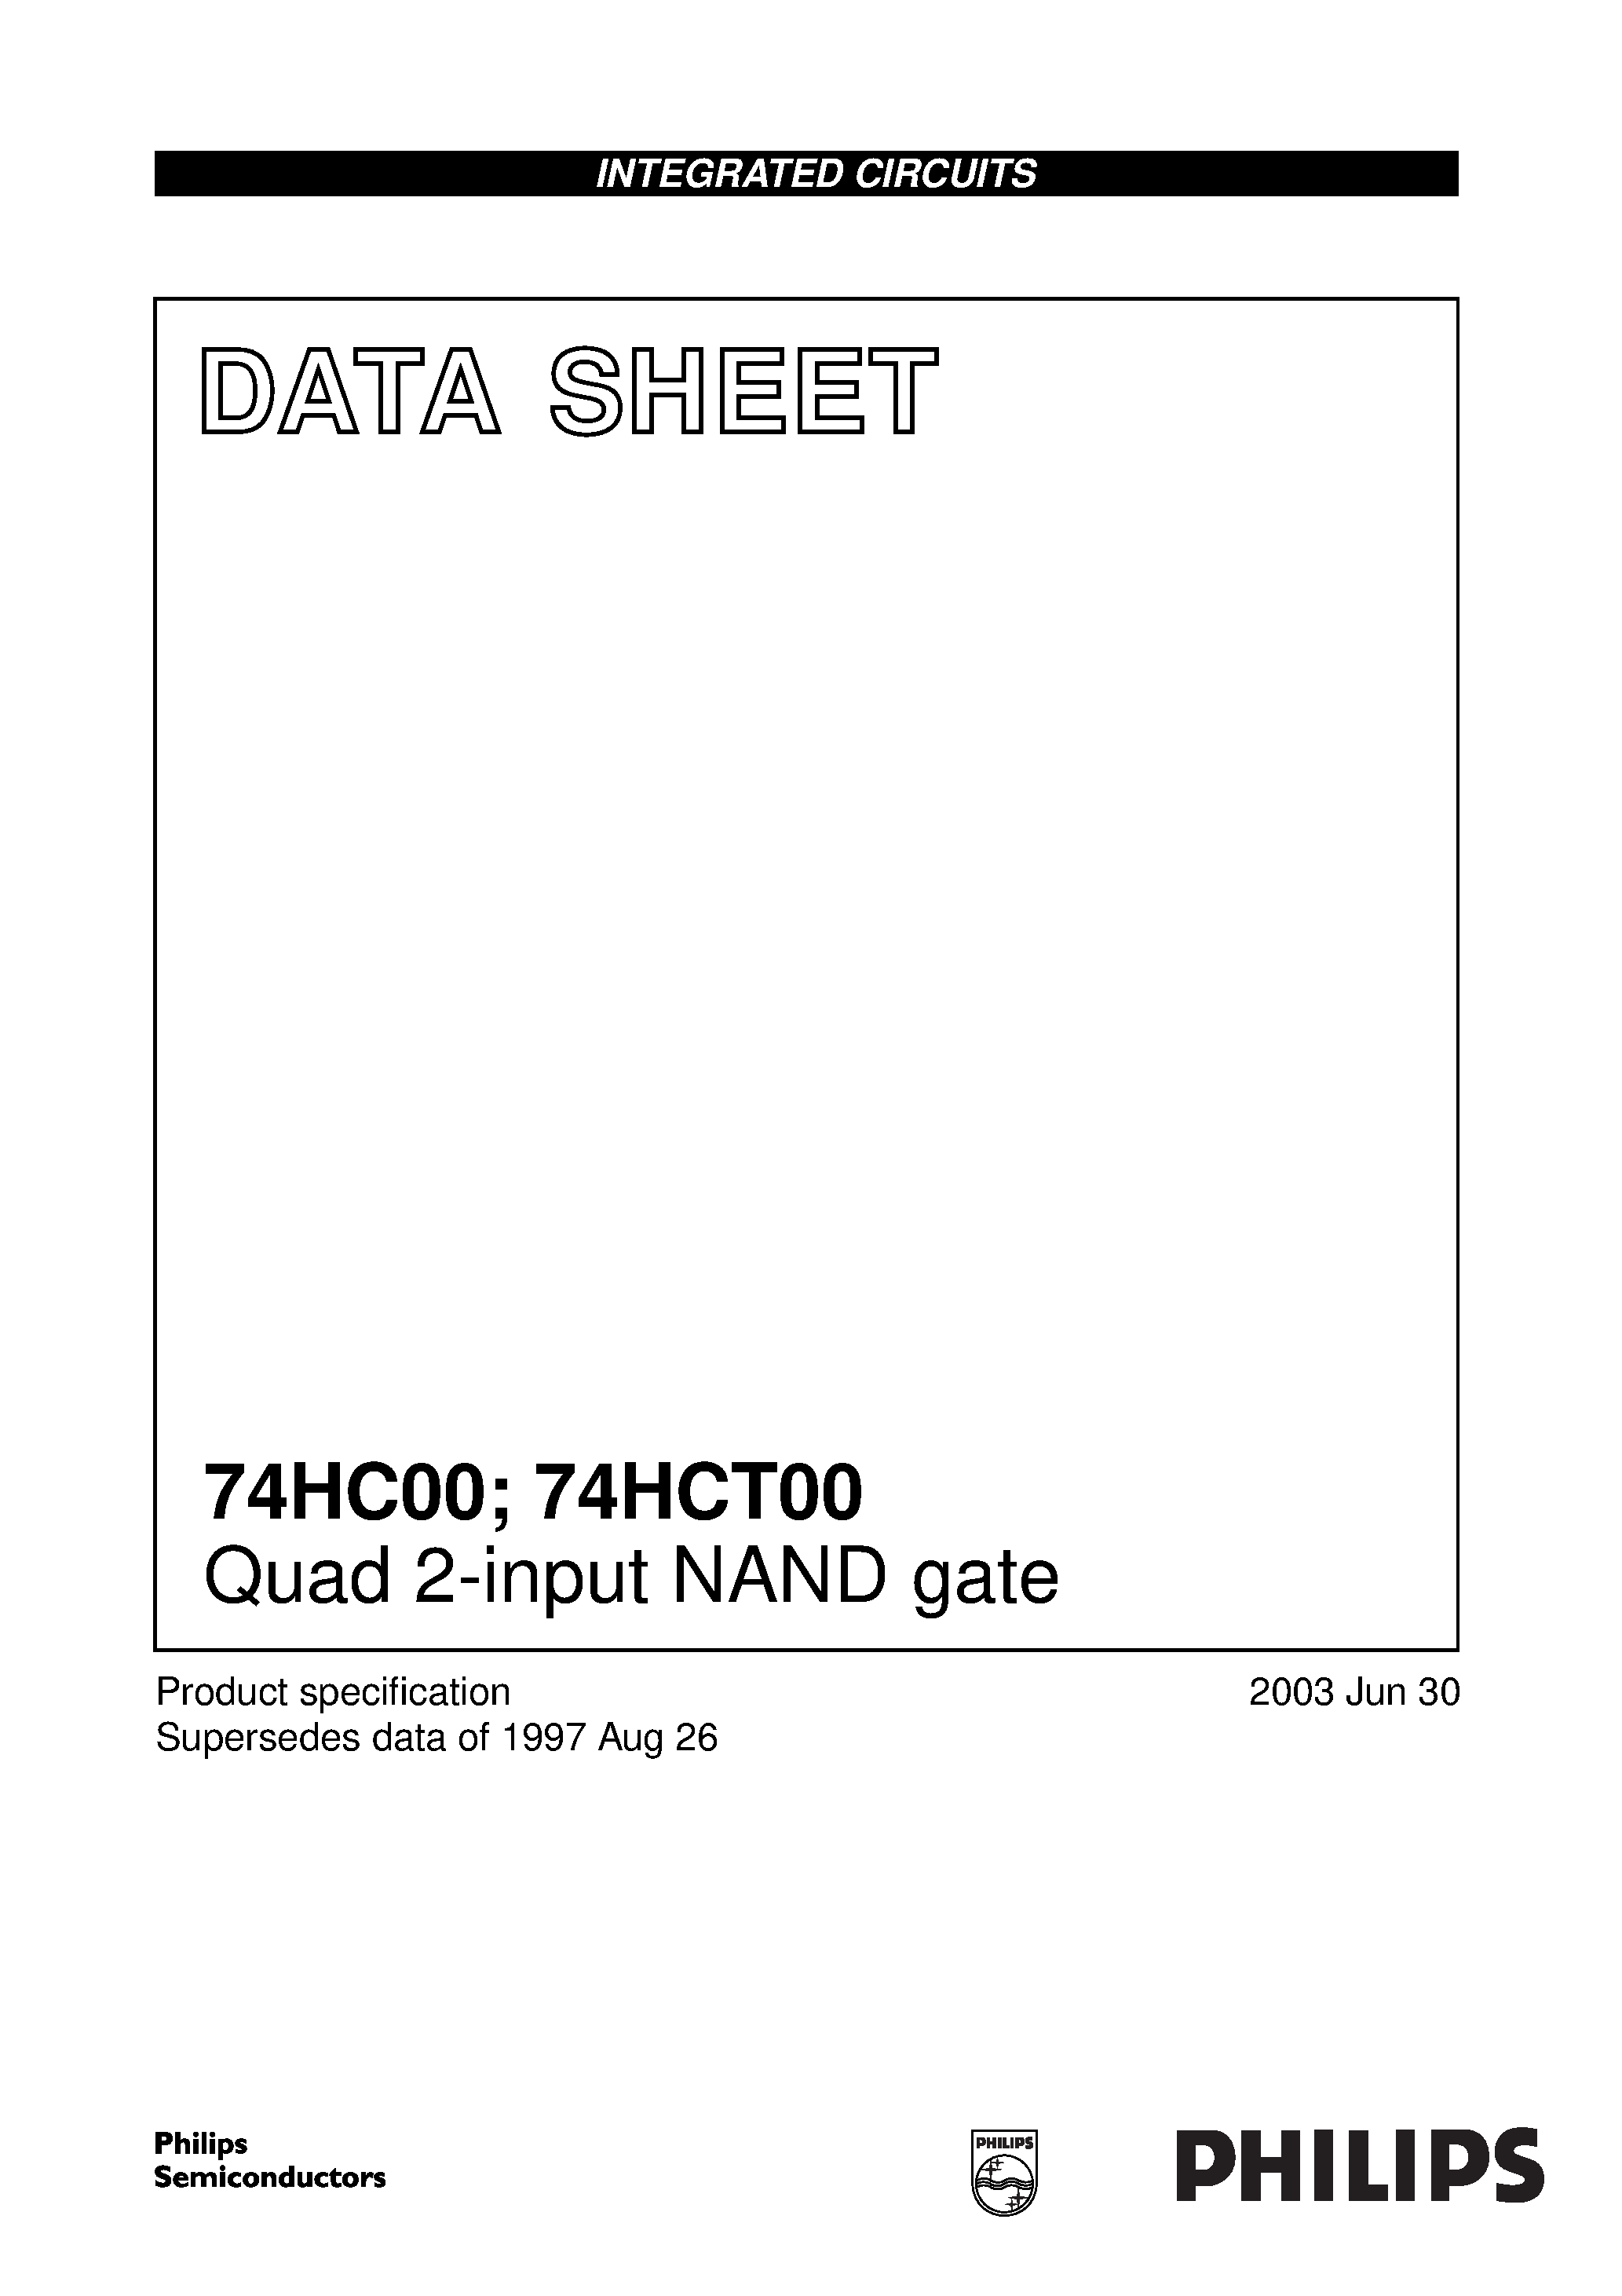 Даташит 74HCT00PW - Quad 2-input NAND gate страница 1